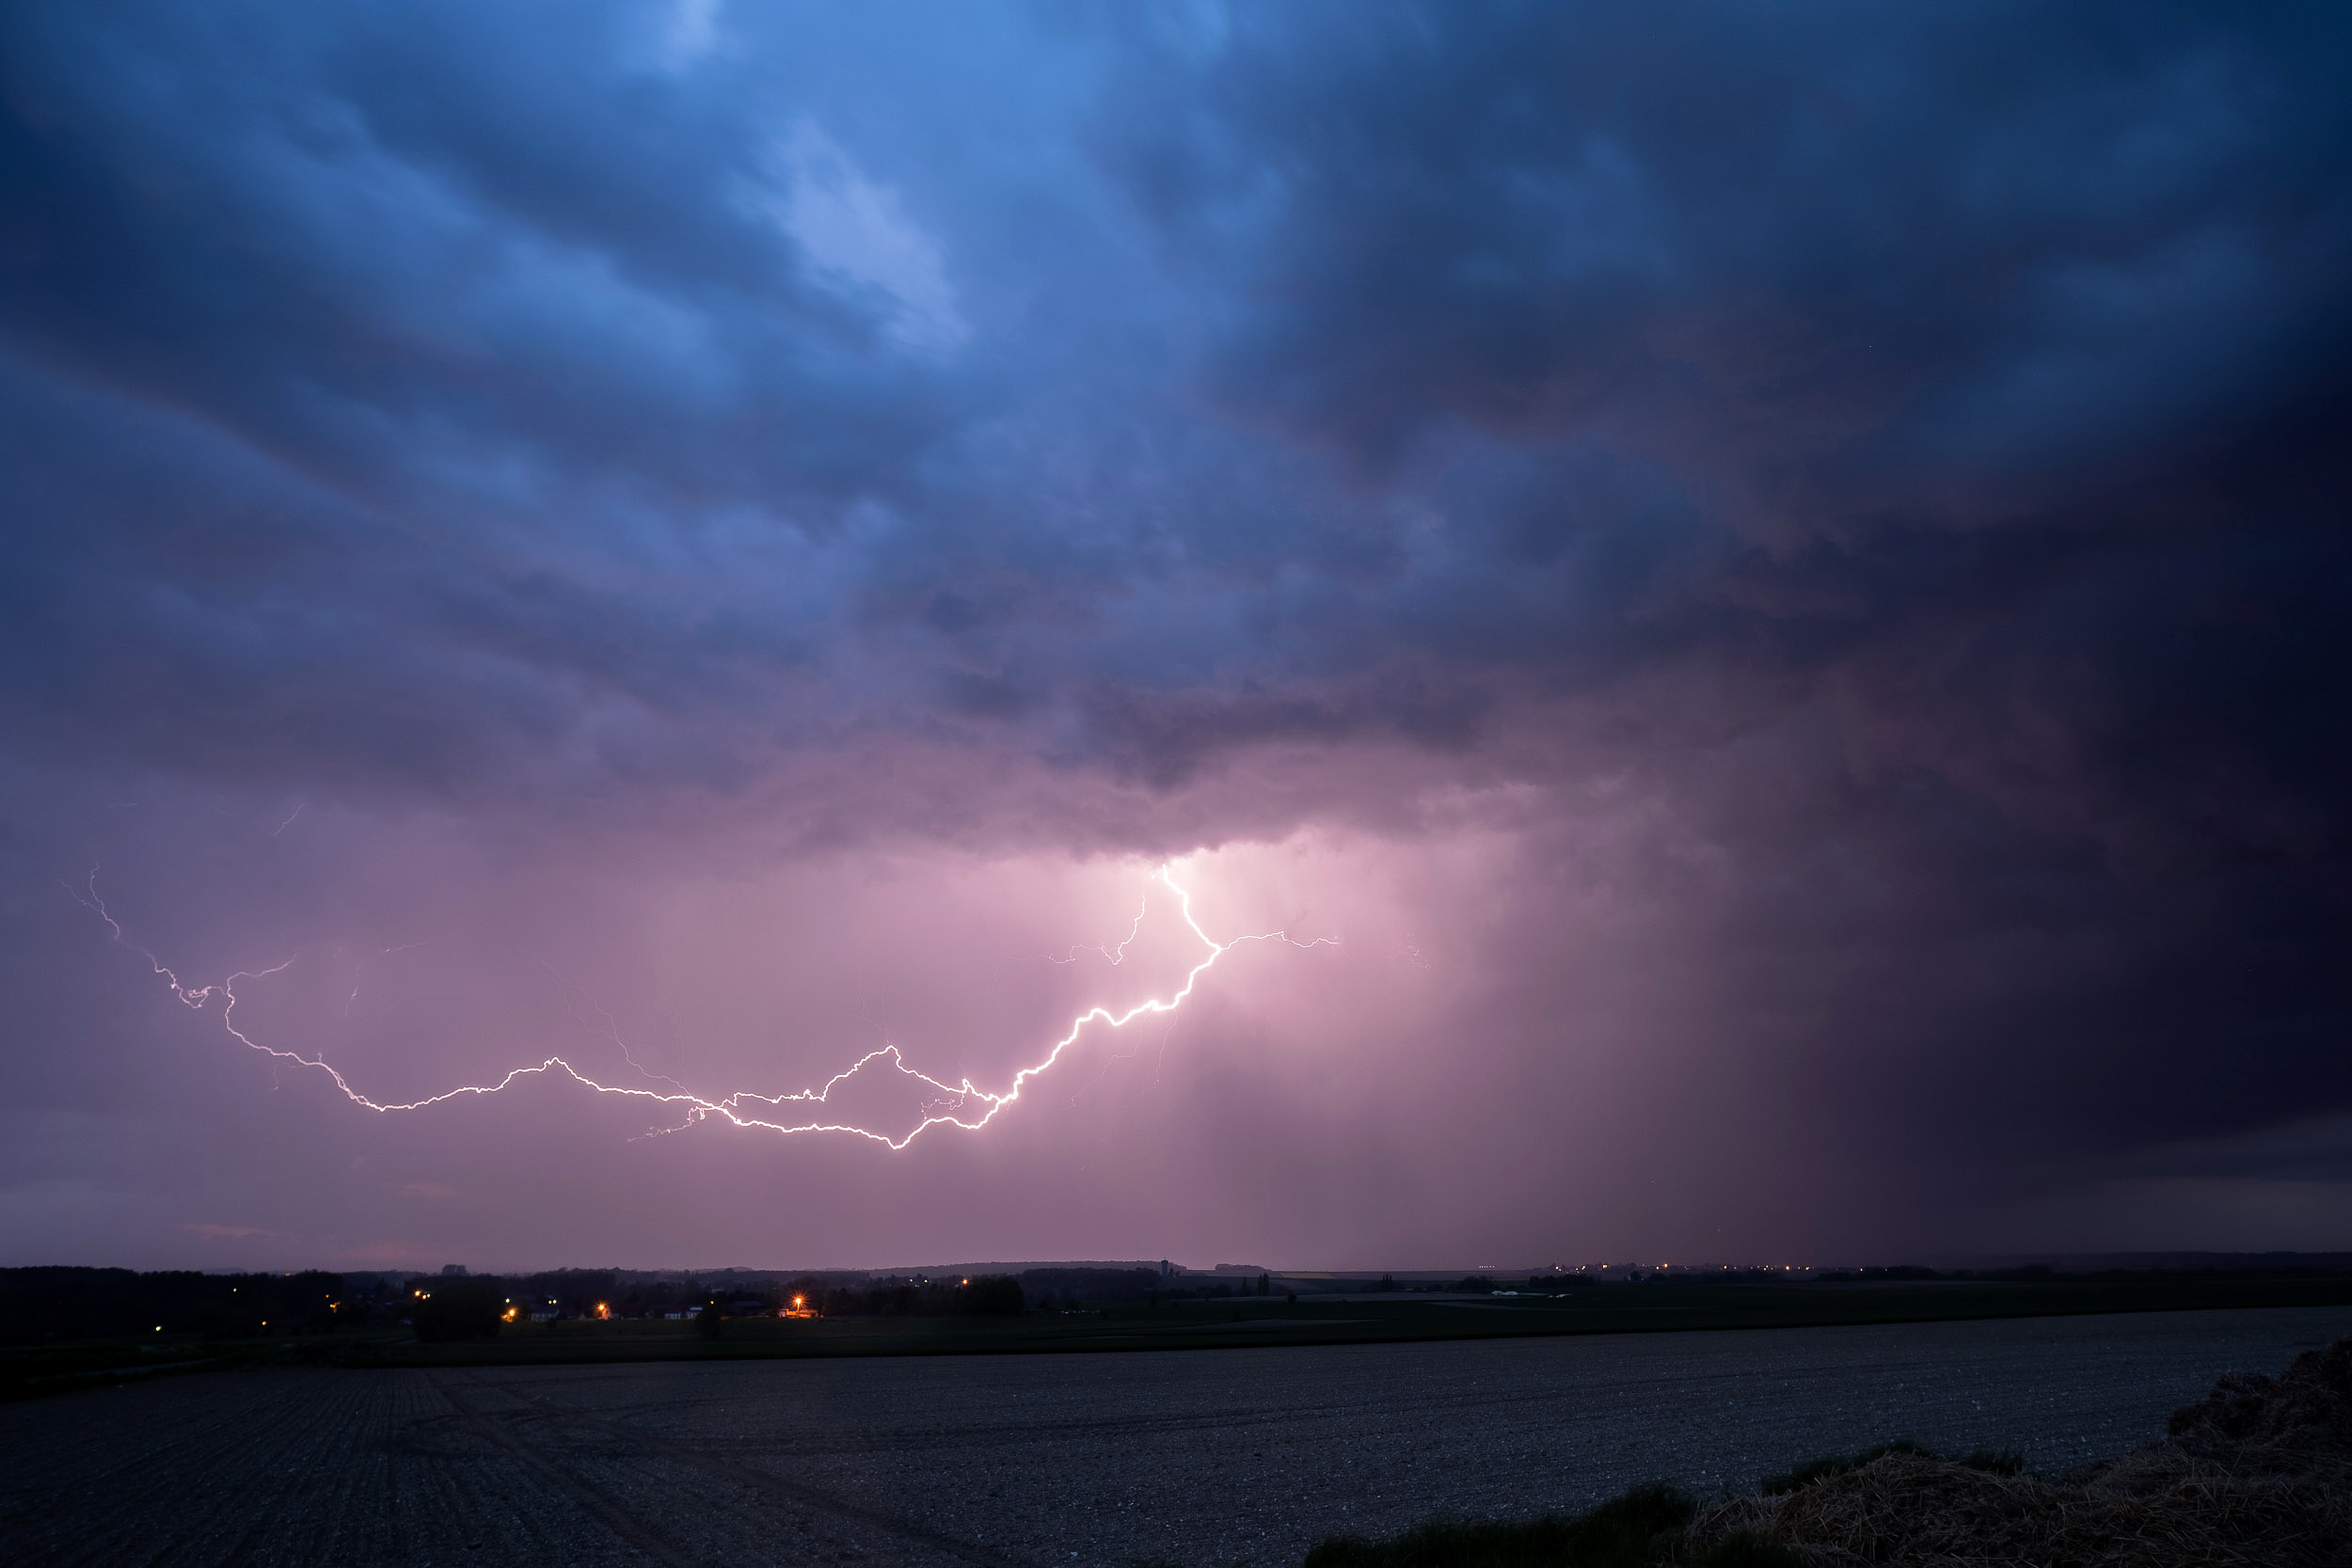 Le 4 mai 2023 en soirée, un orage assez électrique (probable supercellule) faisait une belle démonstration de sa puissance avec des précipitations soutenues, et une activité électrique marquée ! L'orage était en train de passer près de Lille, et se dirigeait tout droit vers la Belgique lorsque la photo a été prise. - 04/05/2023 22:00 - Louka BURJES